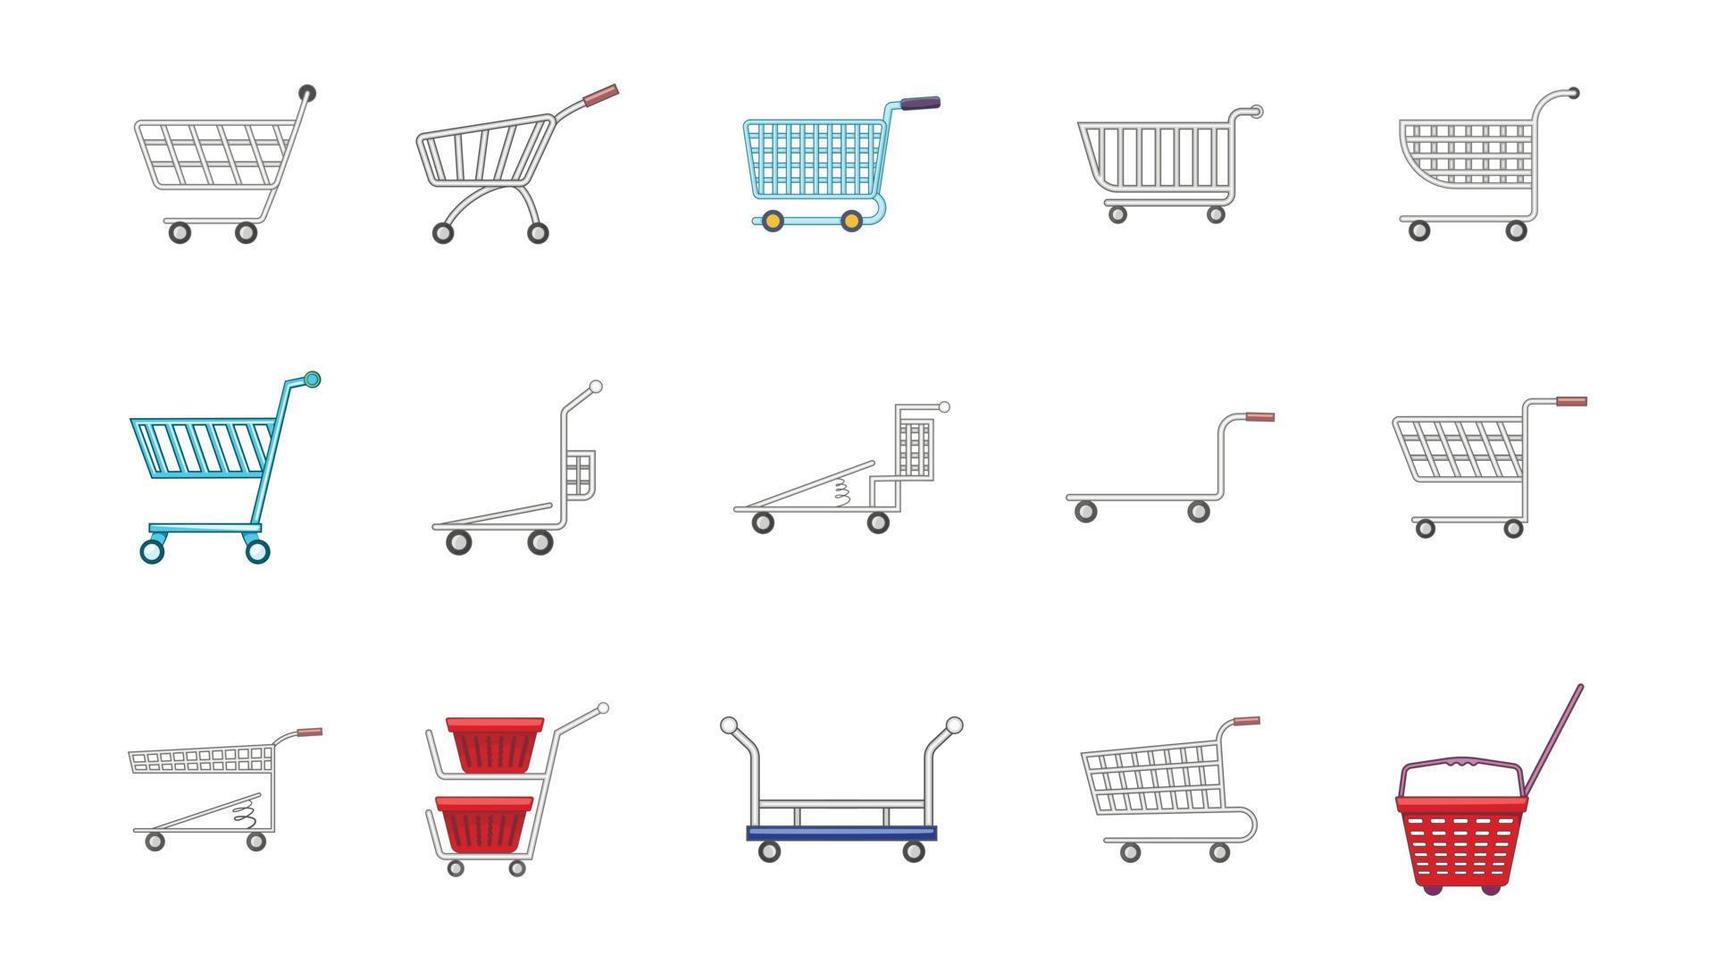 Shop cart icon set, cartoon style vector